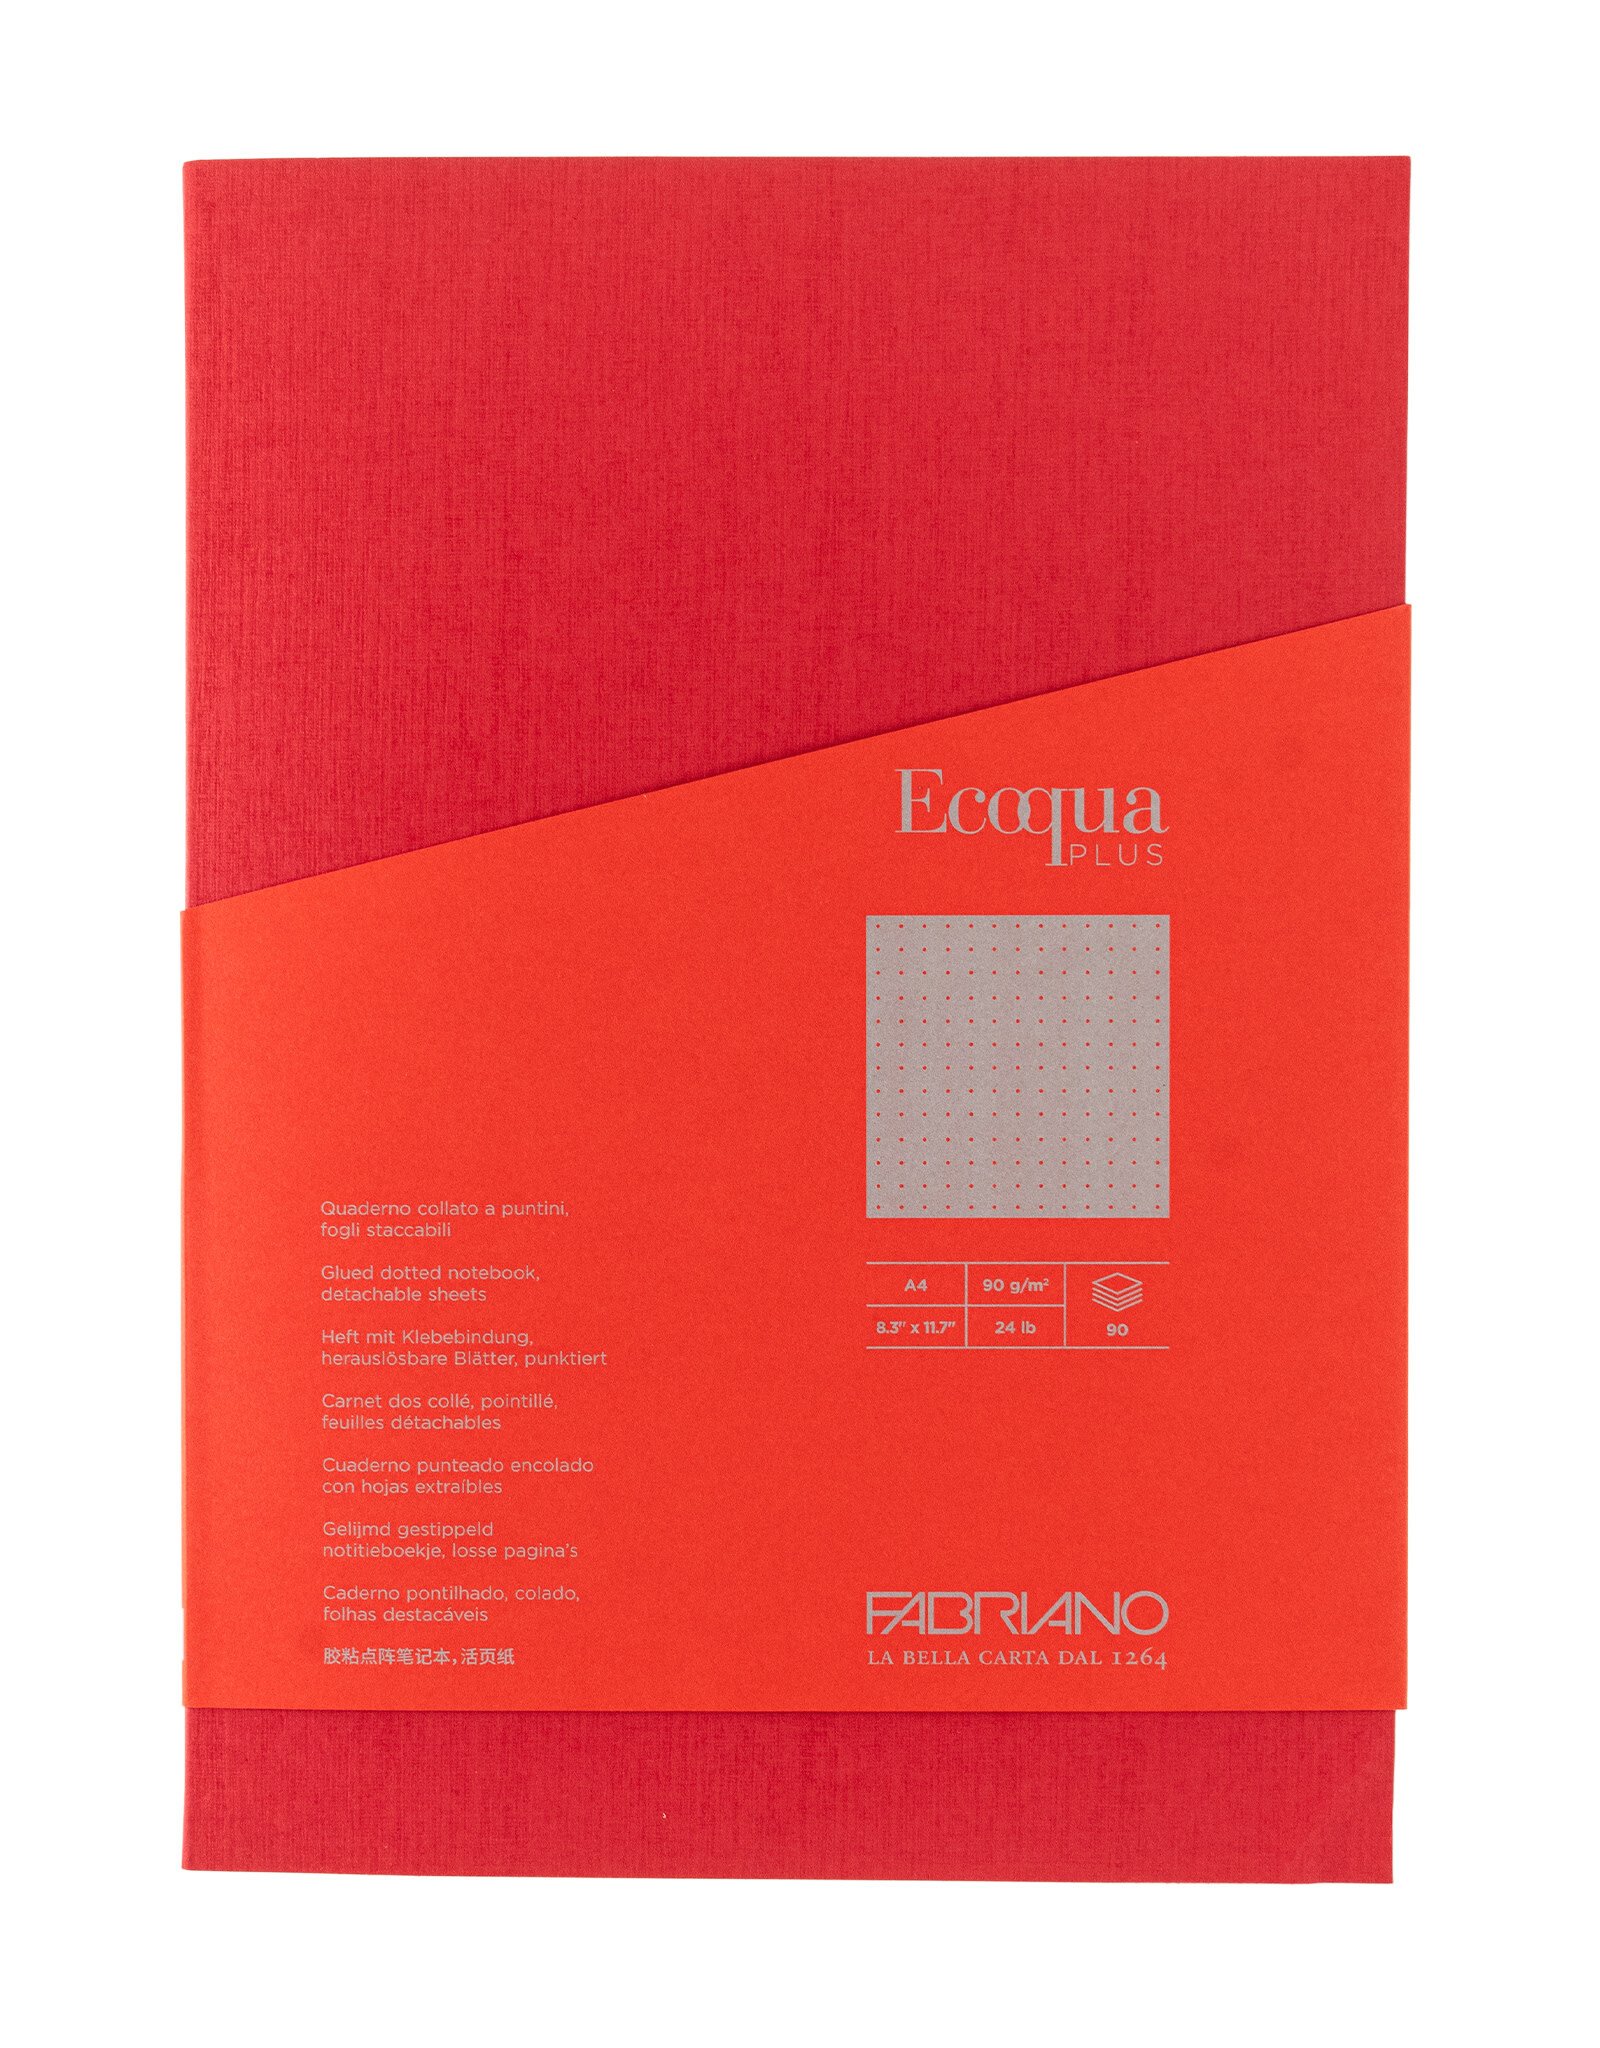 Ecoqua Plus Glue Bound Notebook, Red, A4, Dotted